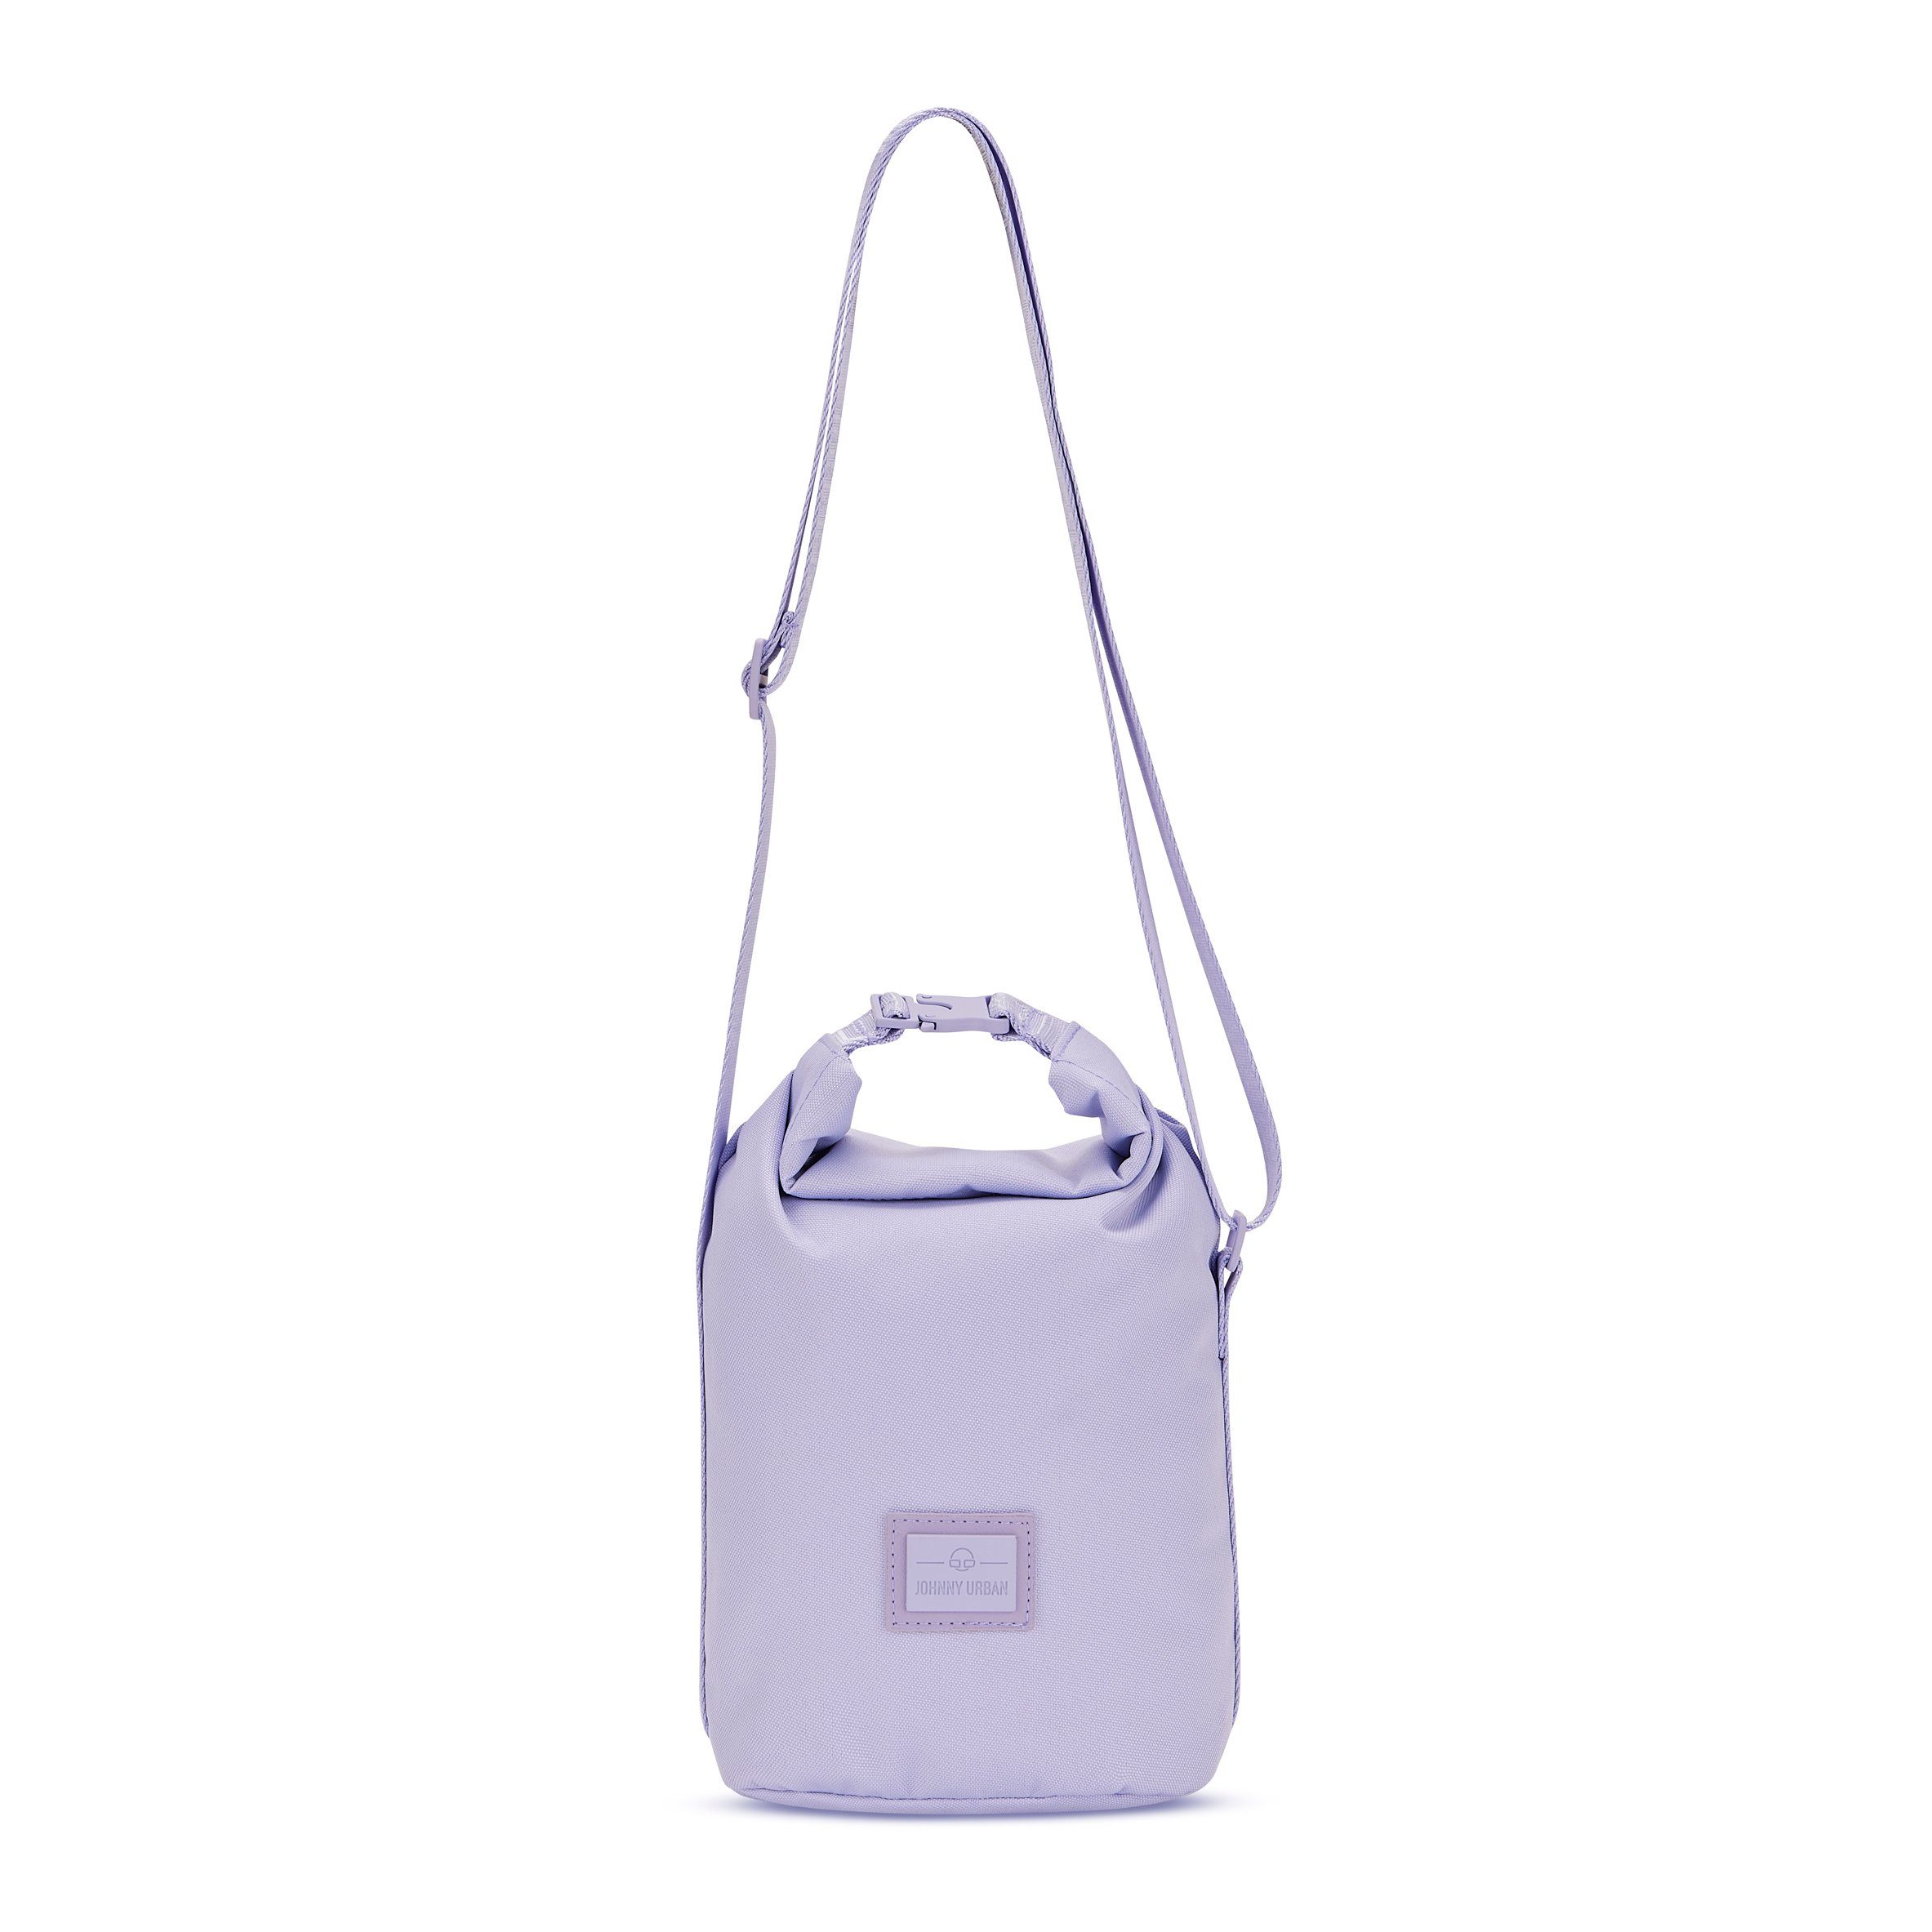 Damen, Handtasche Umhängetasche, Lilac Johnny Handtasche Stylische Wasserabweisend RUE Urban Flexible Größe,